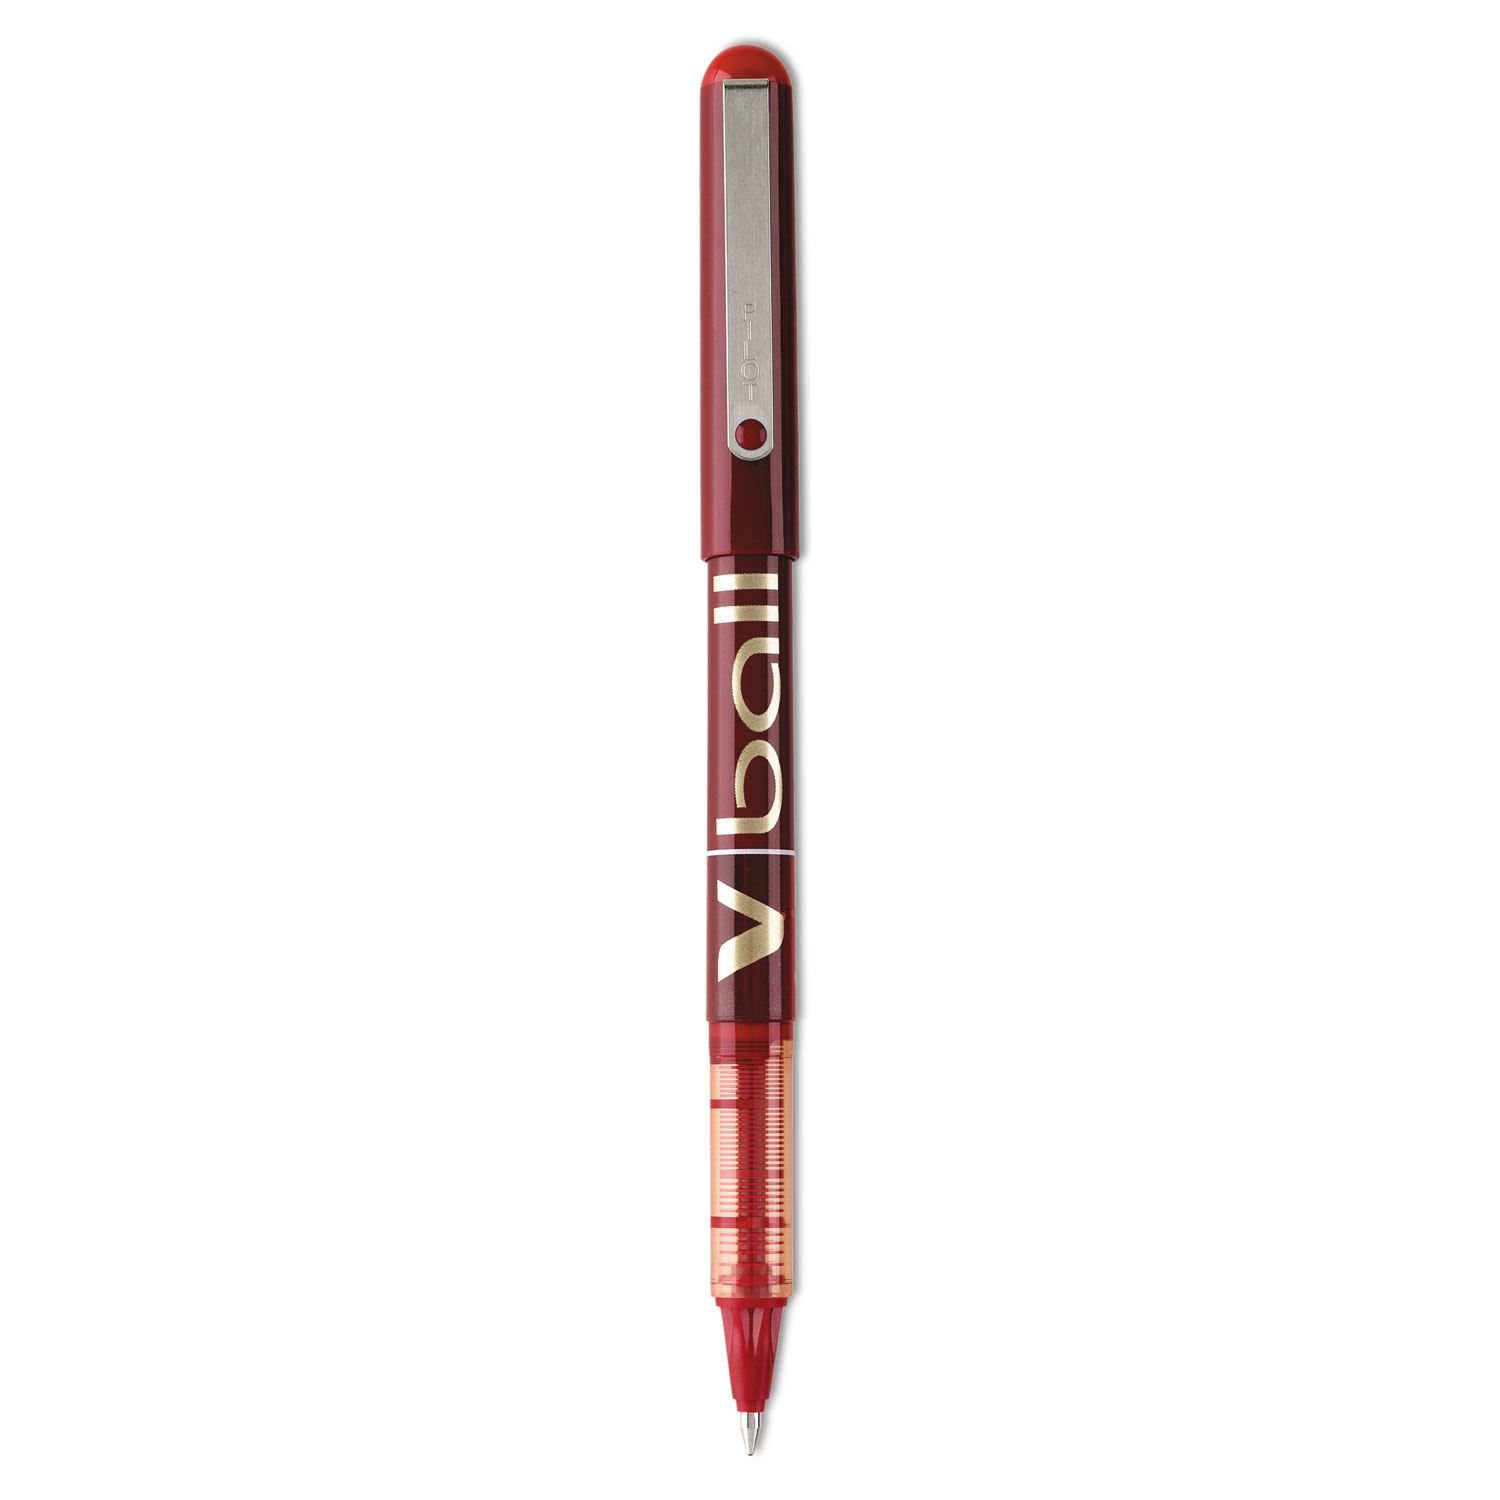  Pilot 35114 VBall Liquid Ink Stick Roller Ball Pen, Fine 0.7mm, Red Ink/Barrel, Dozen (PIL35114) 